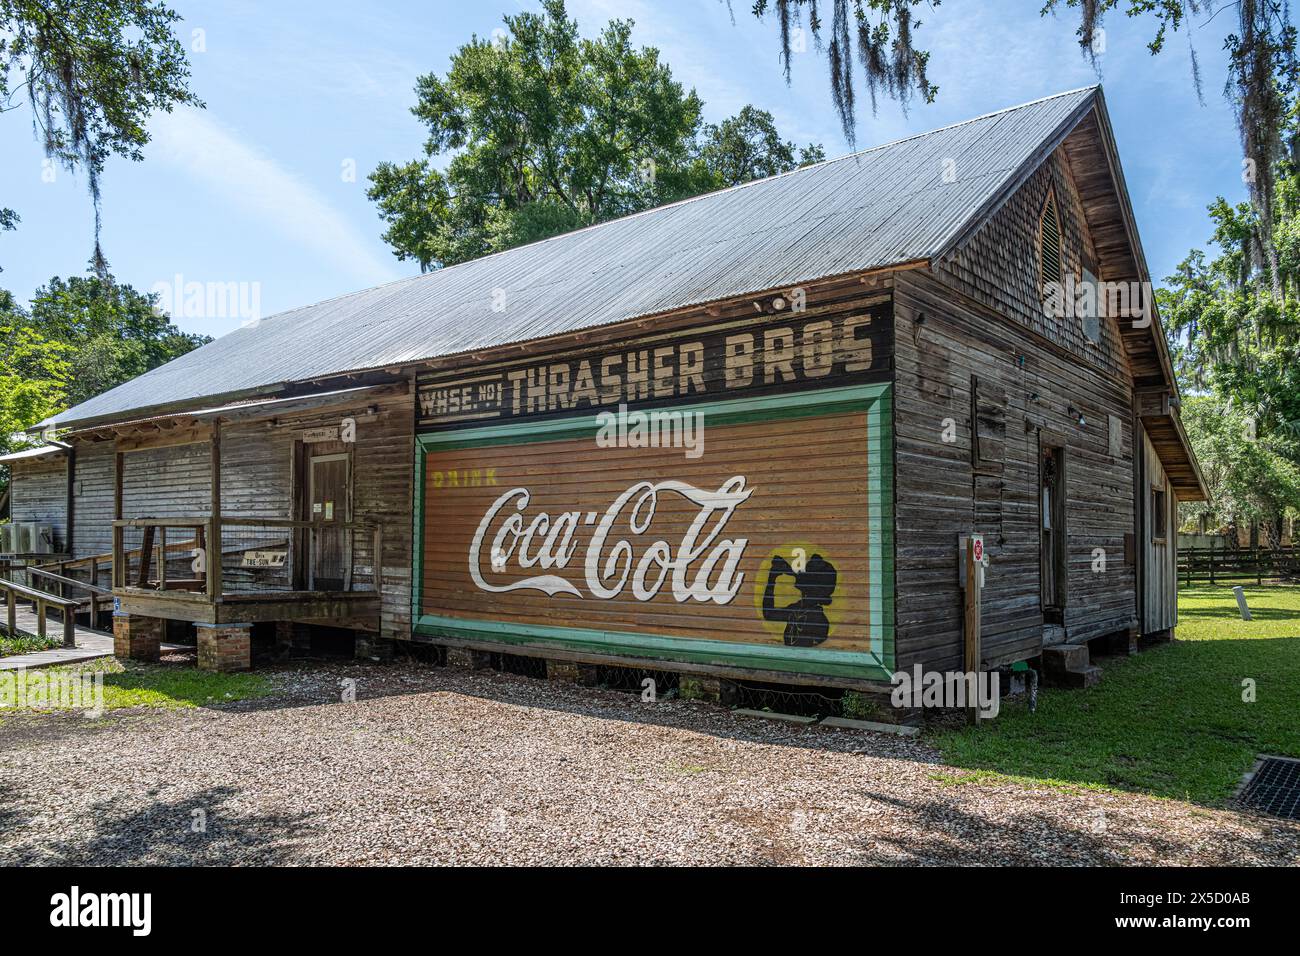 Le Musée de la Société historique de Micanopy dans l'ancien entrepôt de Thrasher Bros. avec peinture murale Coca-Cola peinte à Micanopy, en Floride. (ÉTATS-UNIS) Banque D'Images